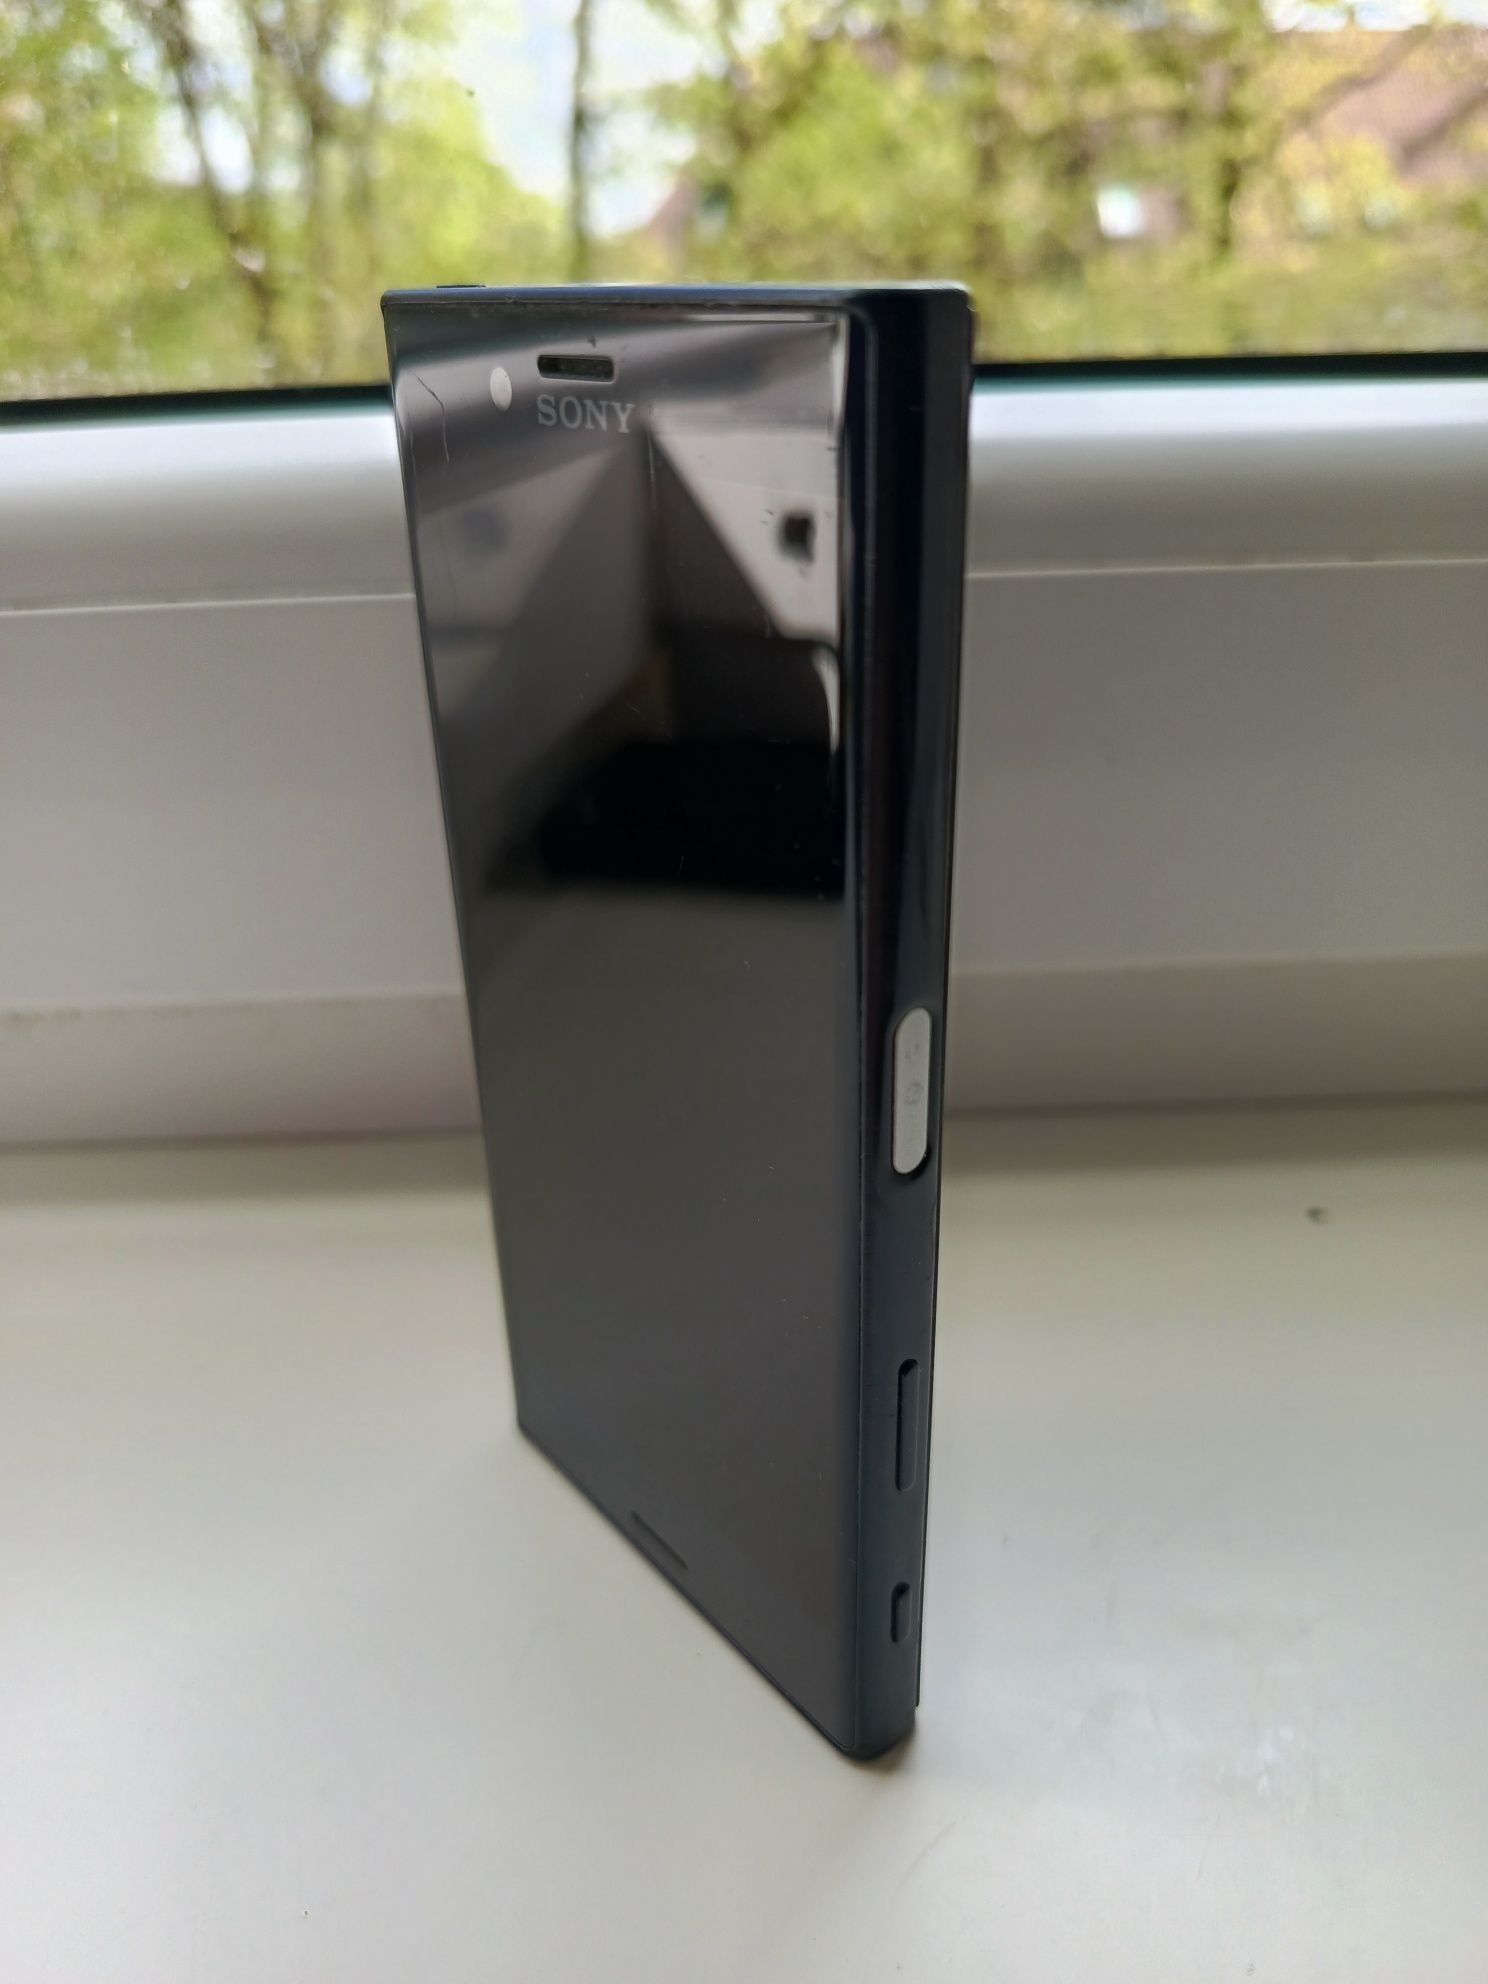 Super Mini Smartfon Xperia XZ compact 3gb/32gb snapdragon 652